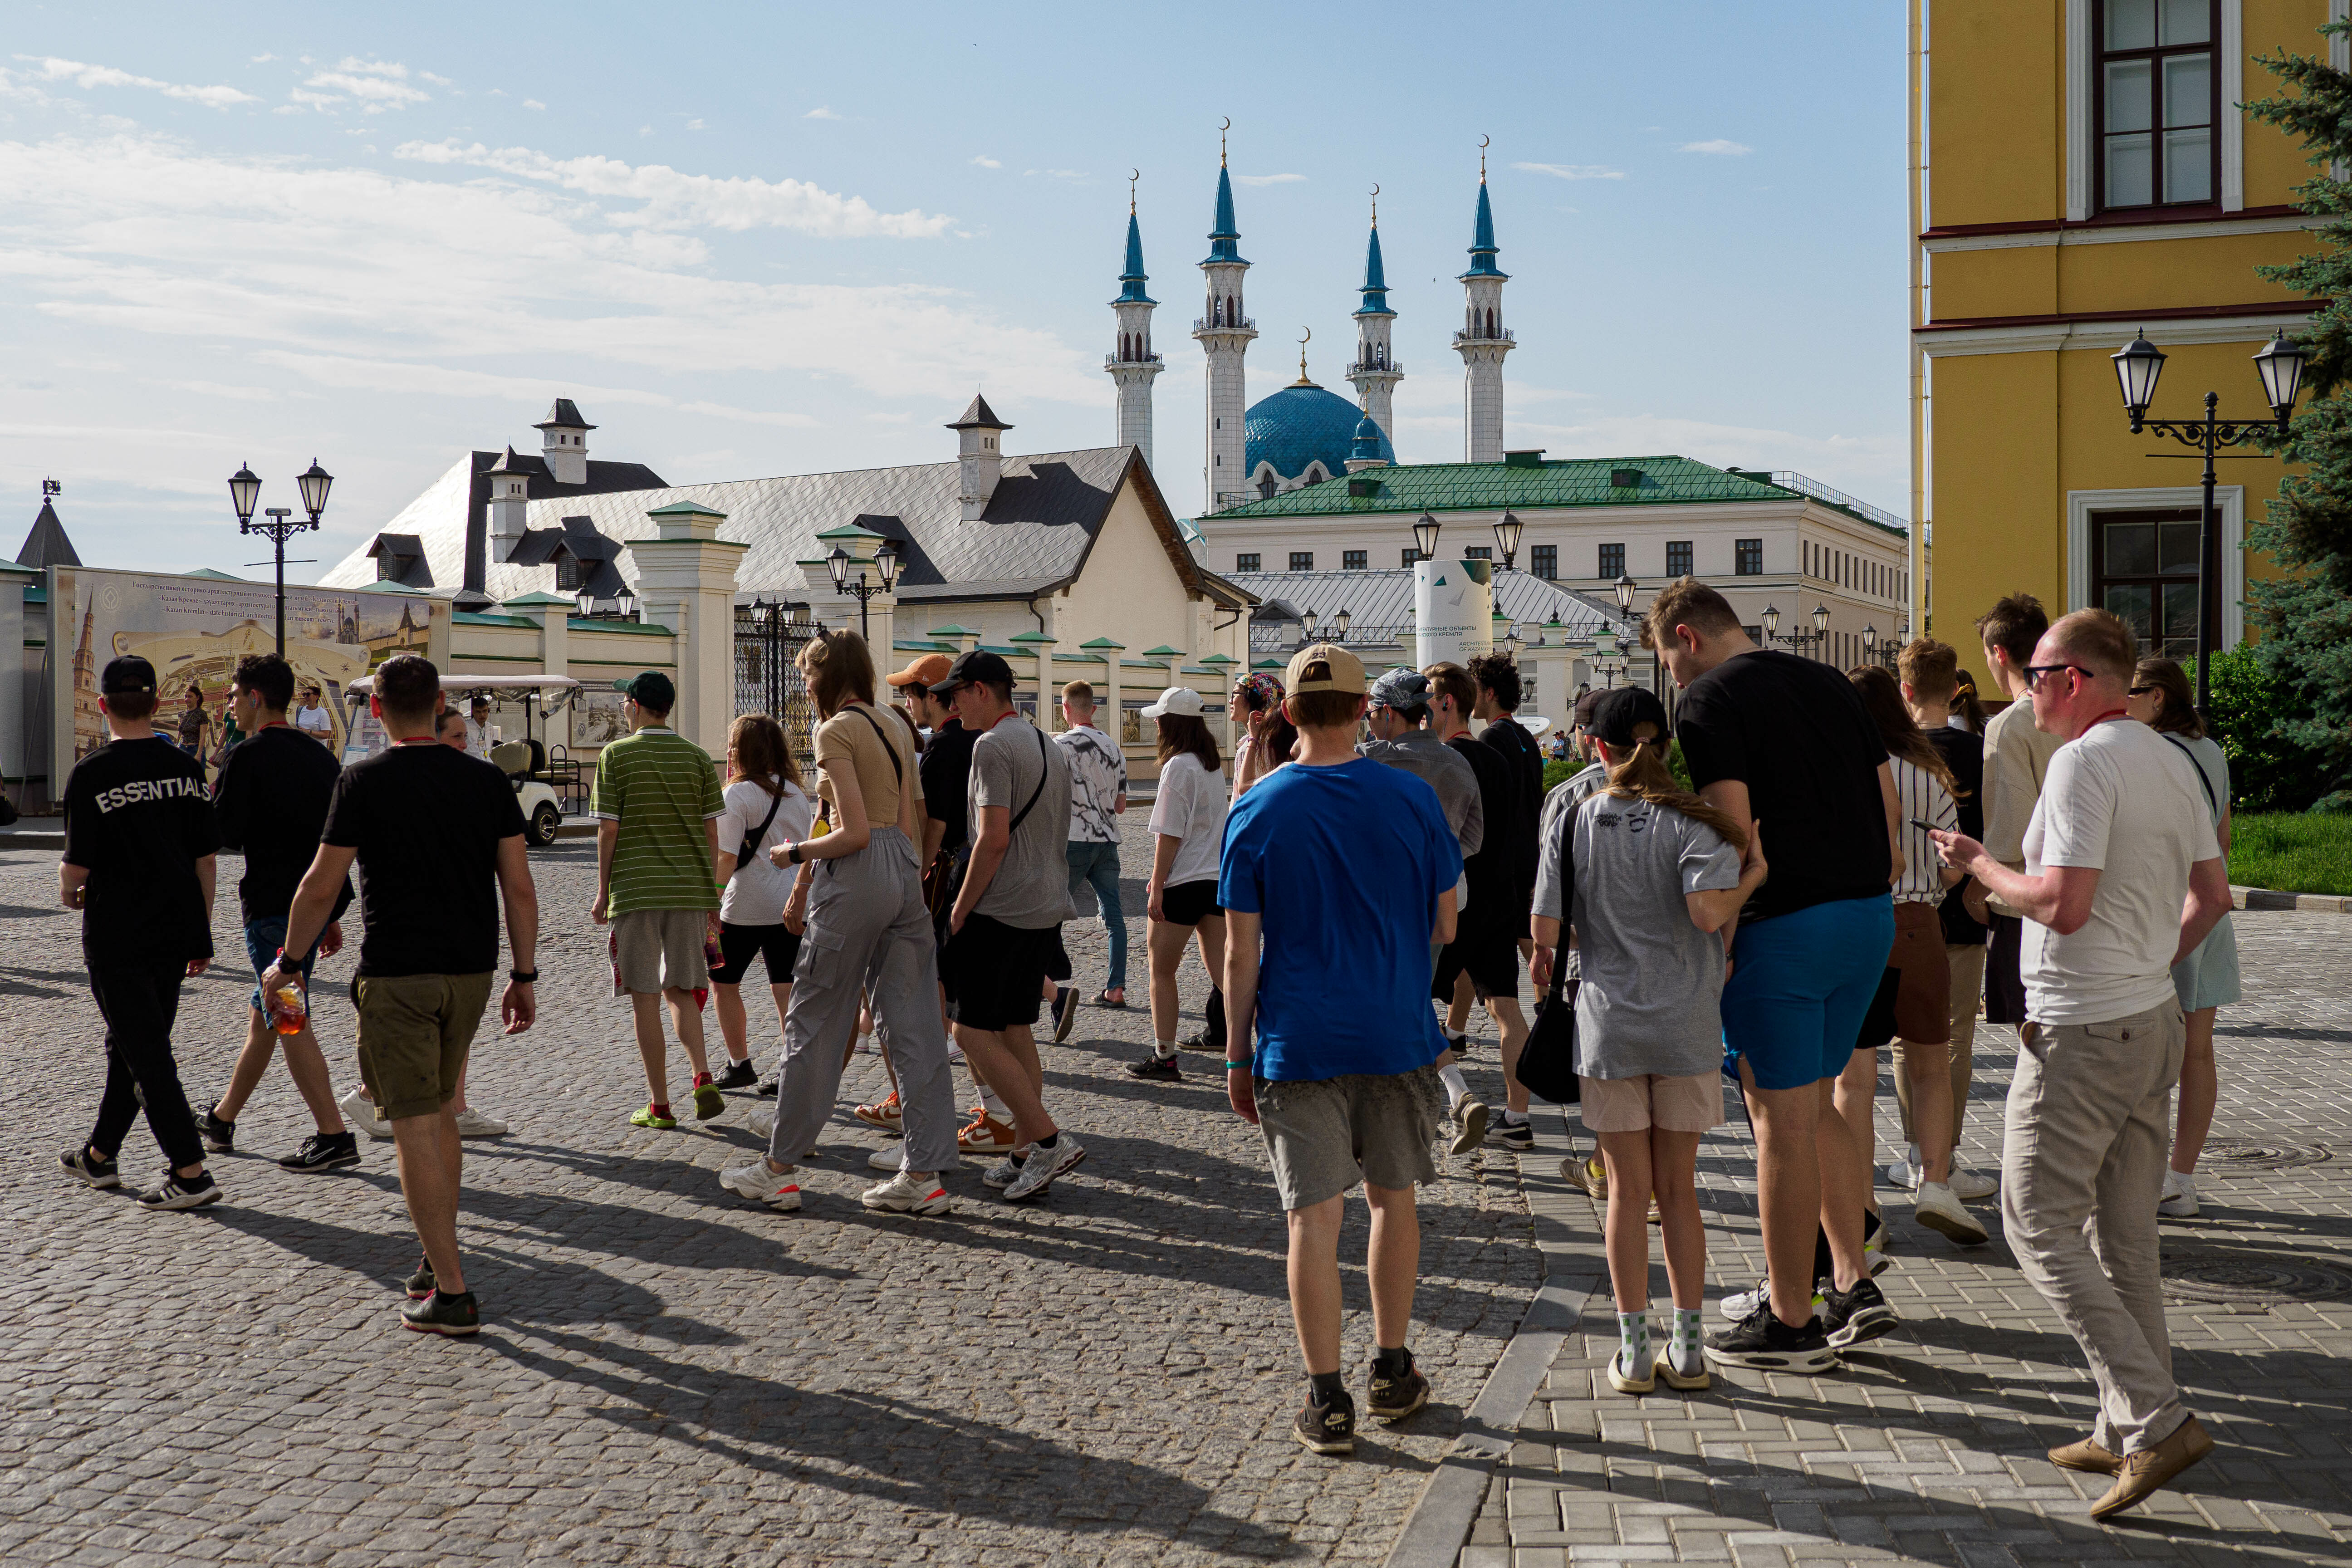 В 2022 году Казанский Кремль принял 3,7 млн человек, Свияжск — 1,3 миллиона, Булгар и Елабуга — по 600 тысяч, Тетюши — 170 тыс.туристов и экскурсантов. Всего, по уточненным данным Росстата, 3,9 млн туристов